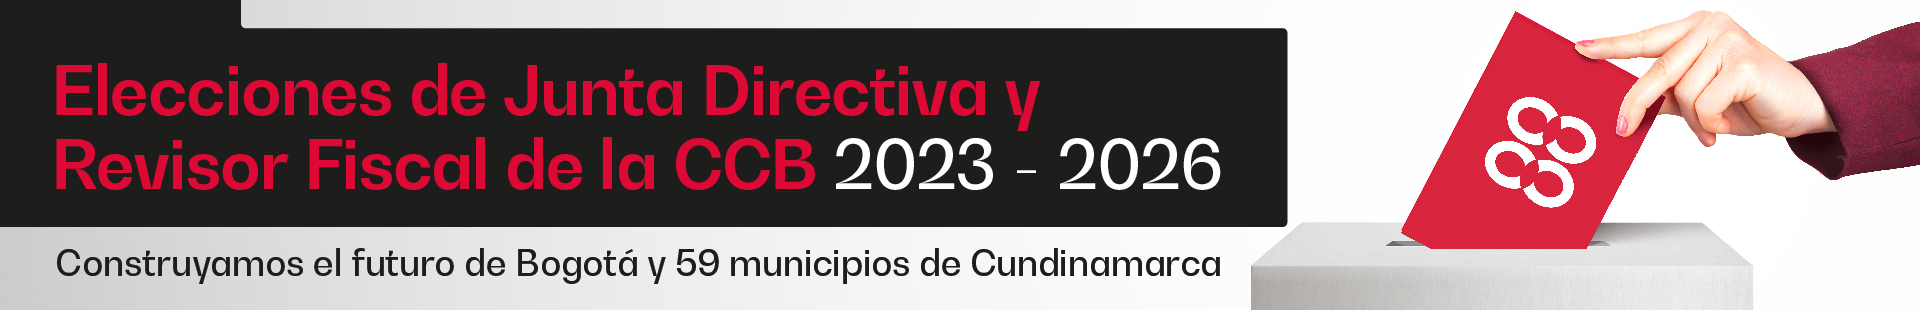 Elecciones junta 2022